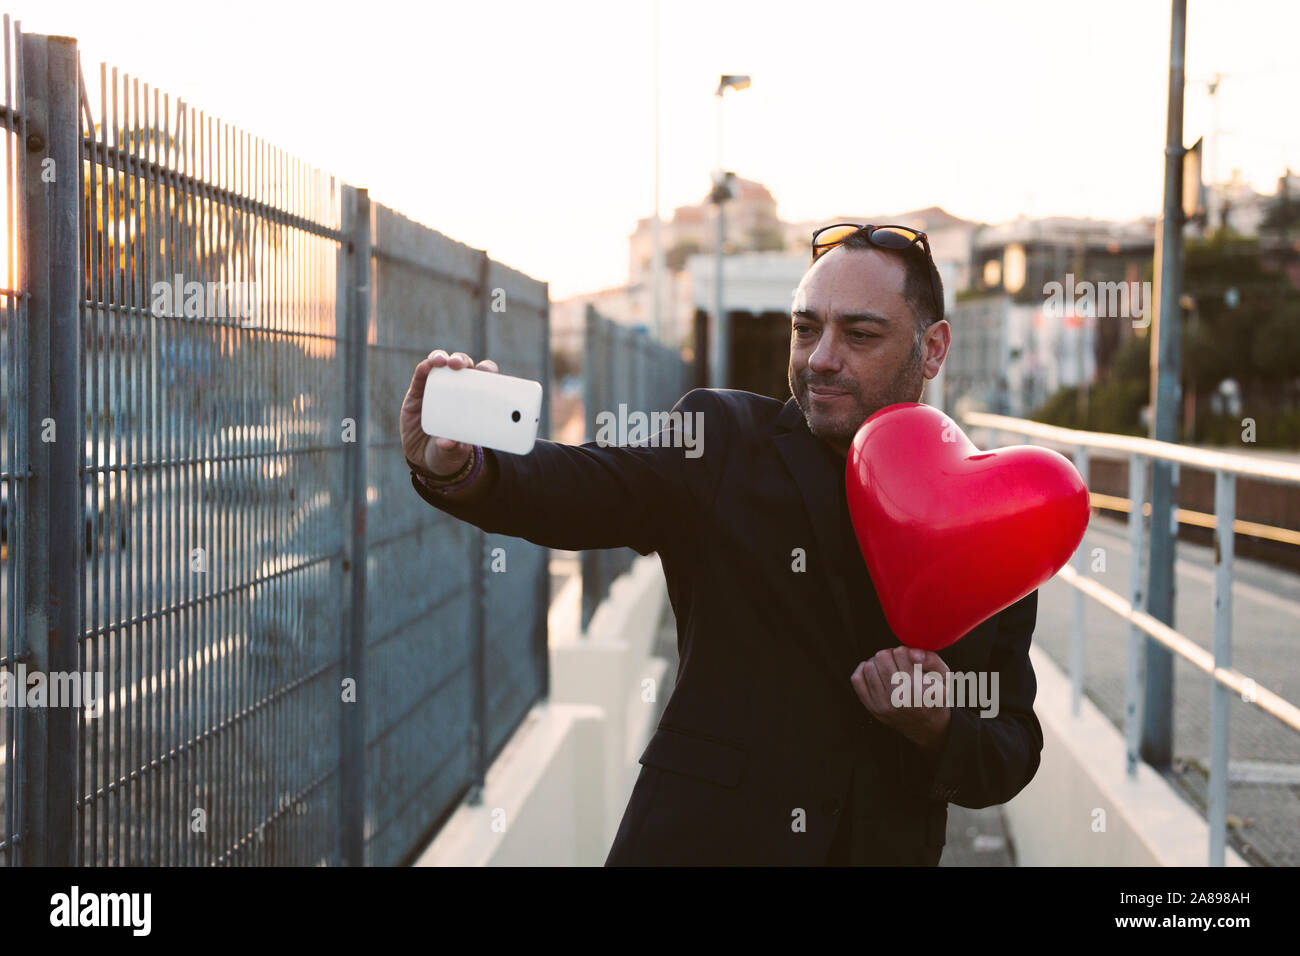 Homme prenant le selfie avec un ballon en forme de cœur rouge Banque D'Images